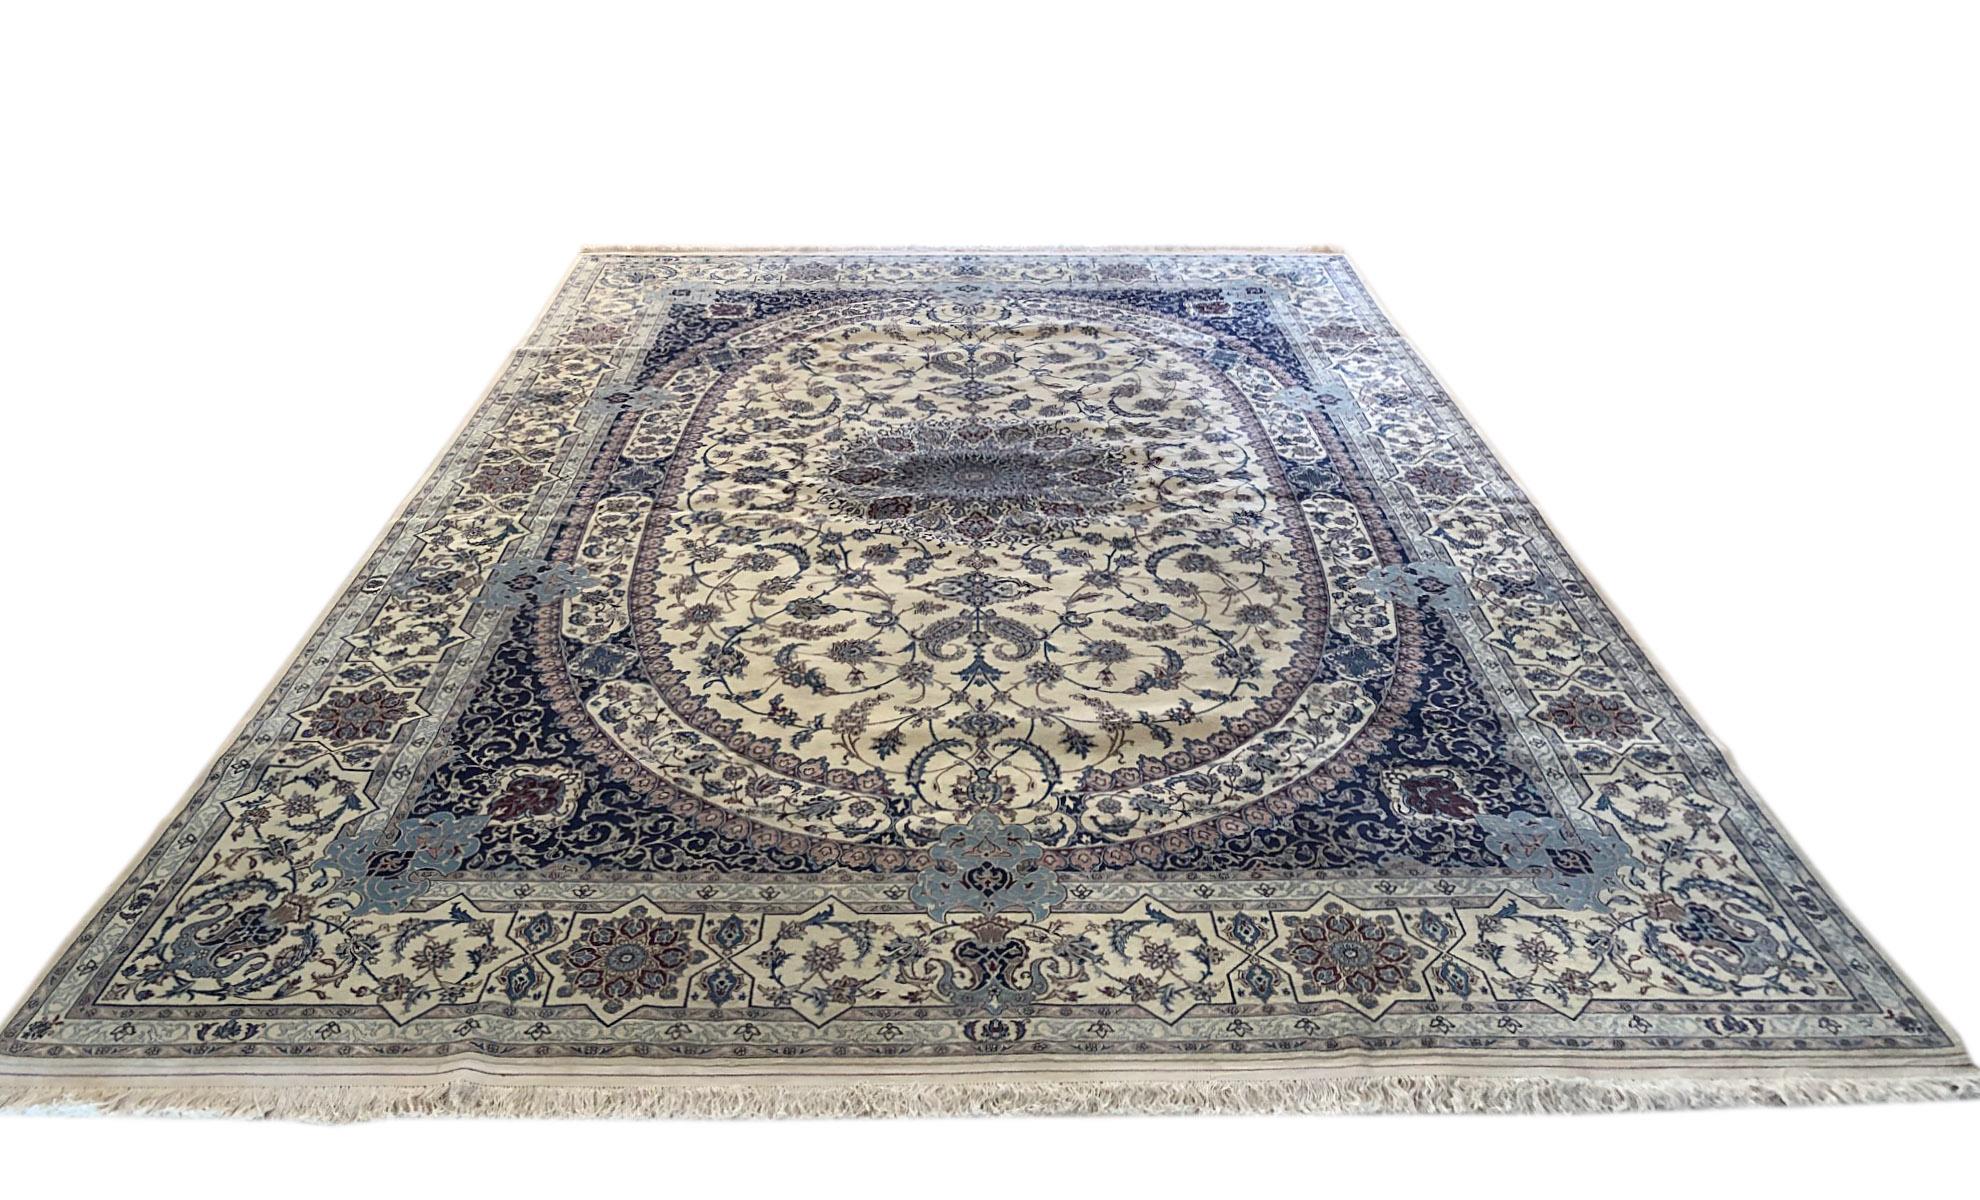 Dieser handgefertigte Teppich ist ein sehr feines und präzises Stück mit hoher Qualität, hergestellt in den Werkstätten in der Stadt Nain im Iran. Dieses Stück hat einen Flor aus Wolle und Seide mit Baumwollgrund. Nain ist eine Stadt im Iran, die